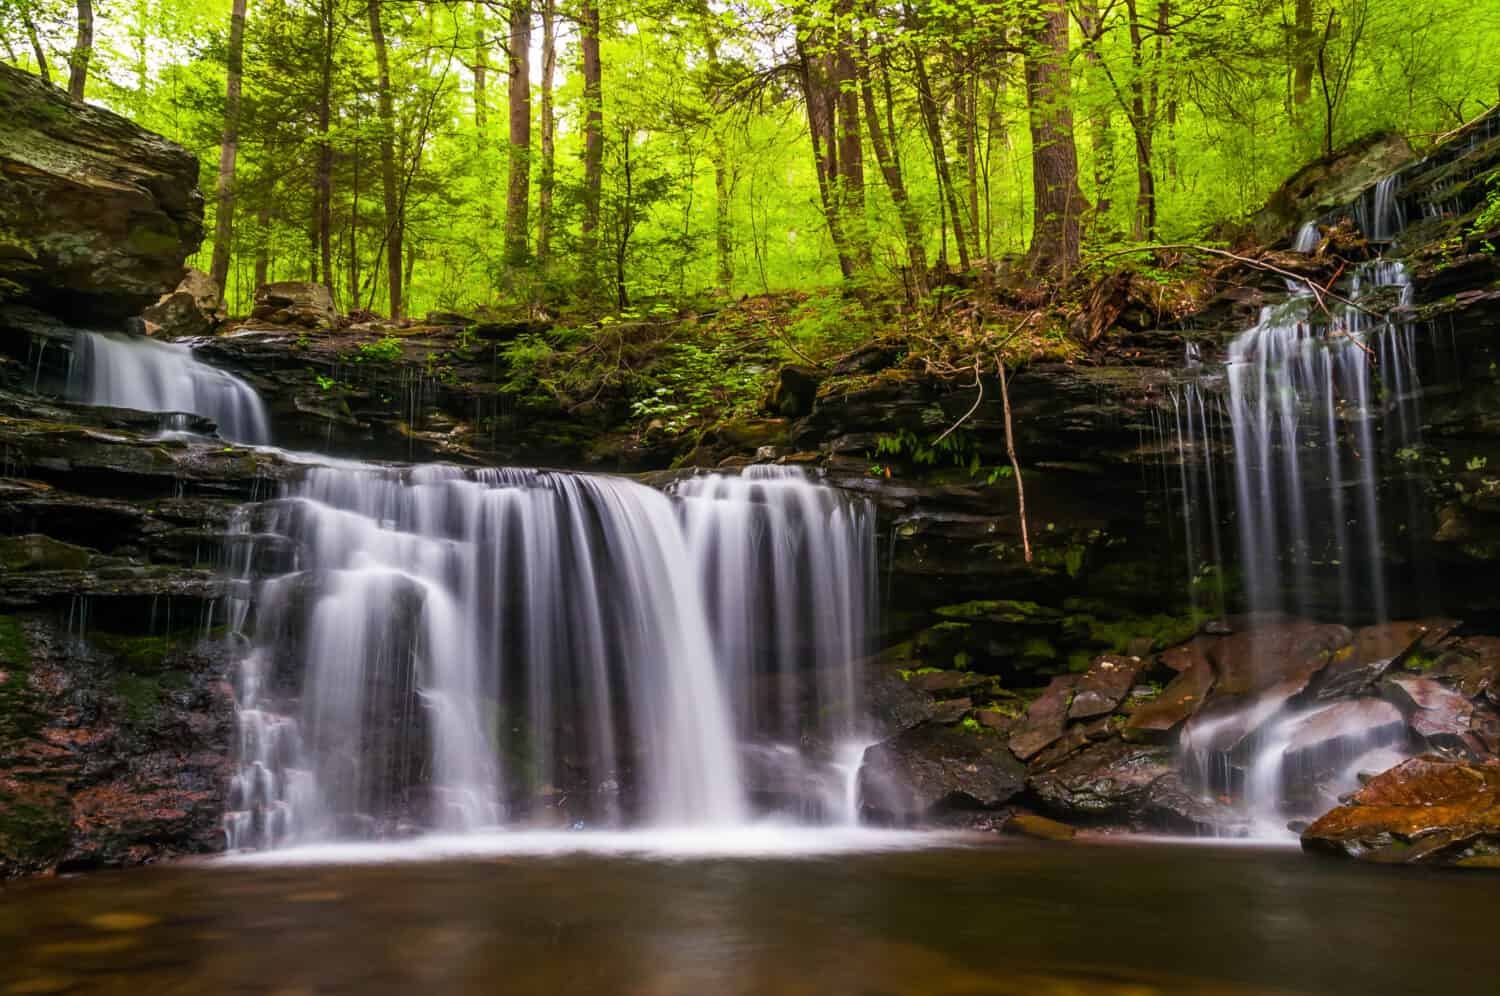 Waterfall on Kitchen Creek in Ricketts Glen State Park, Pennsylvania.